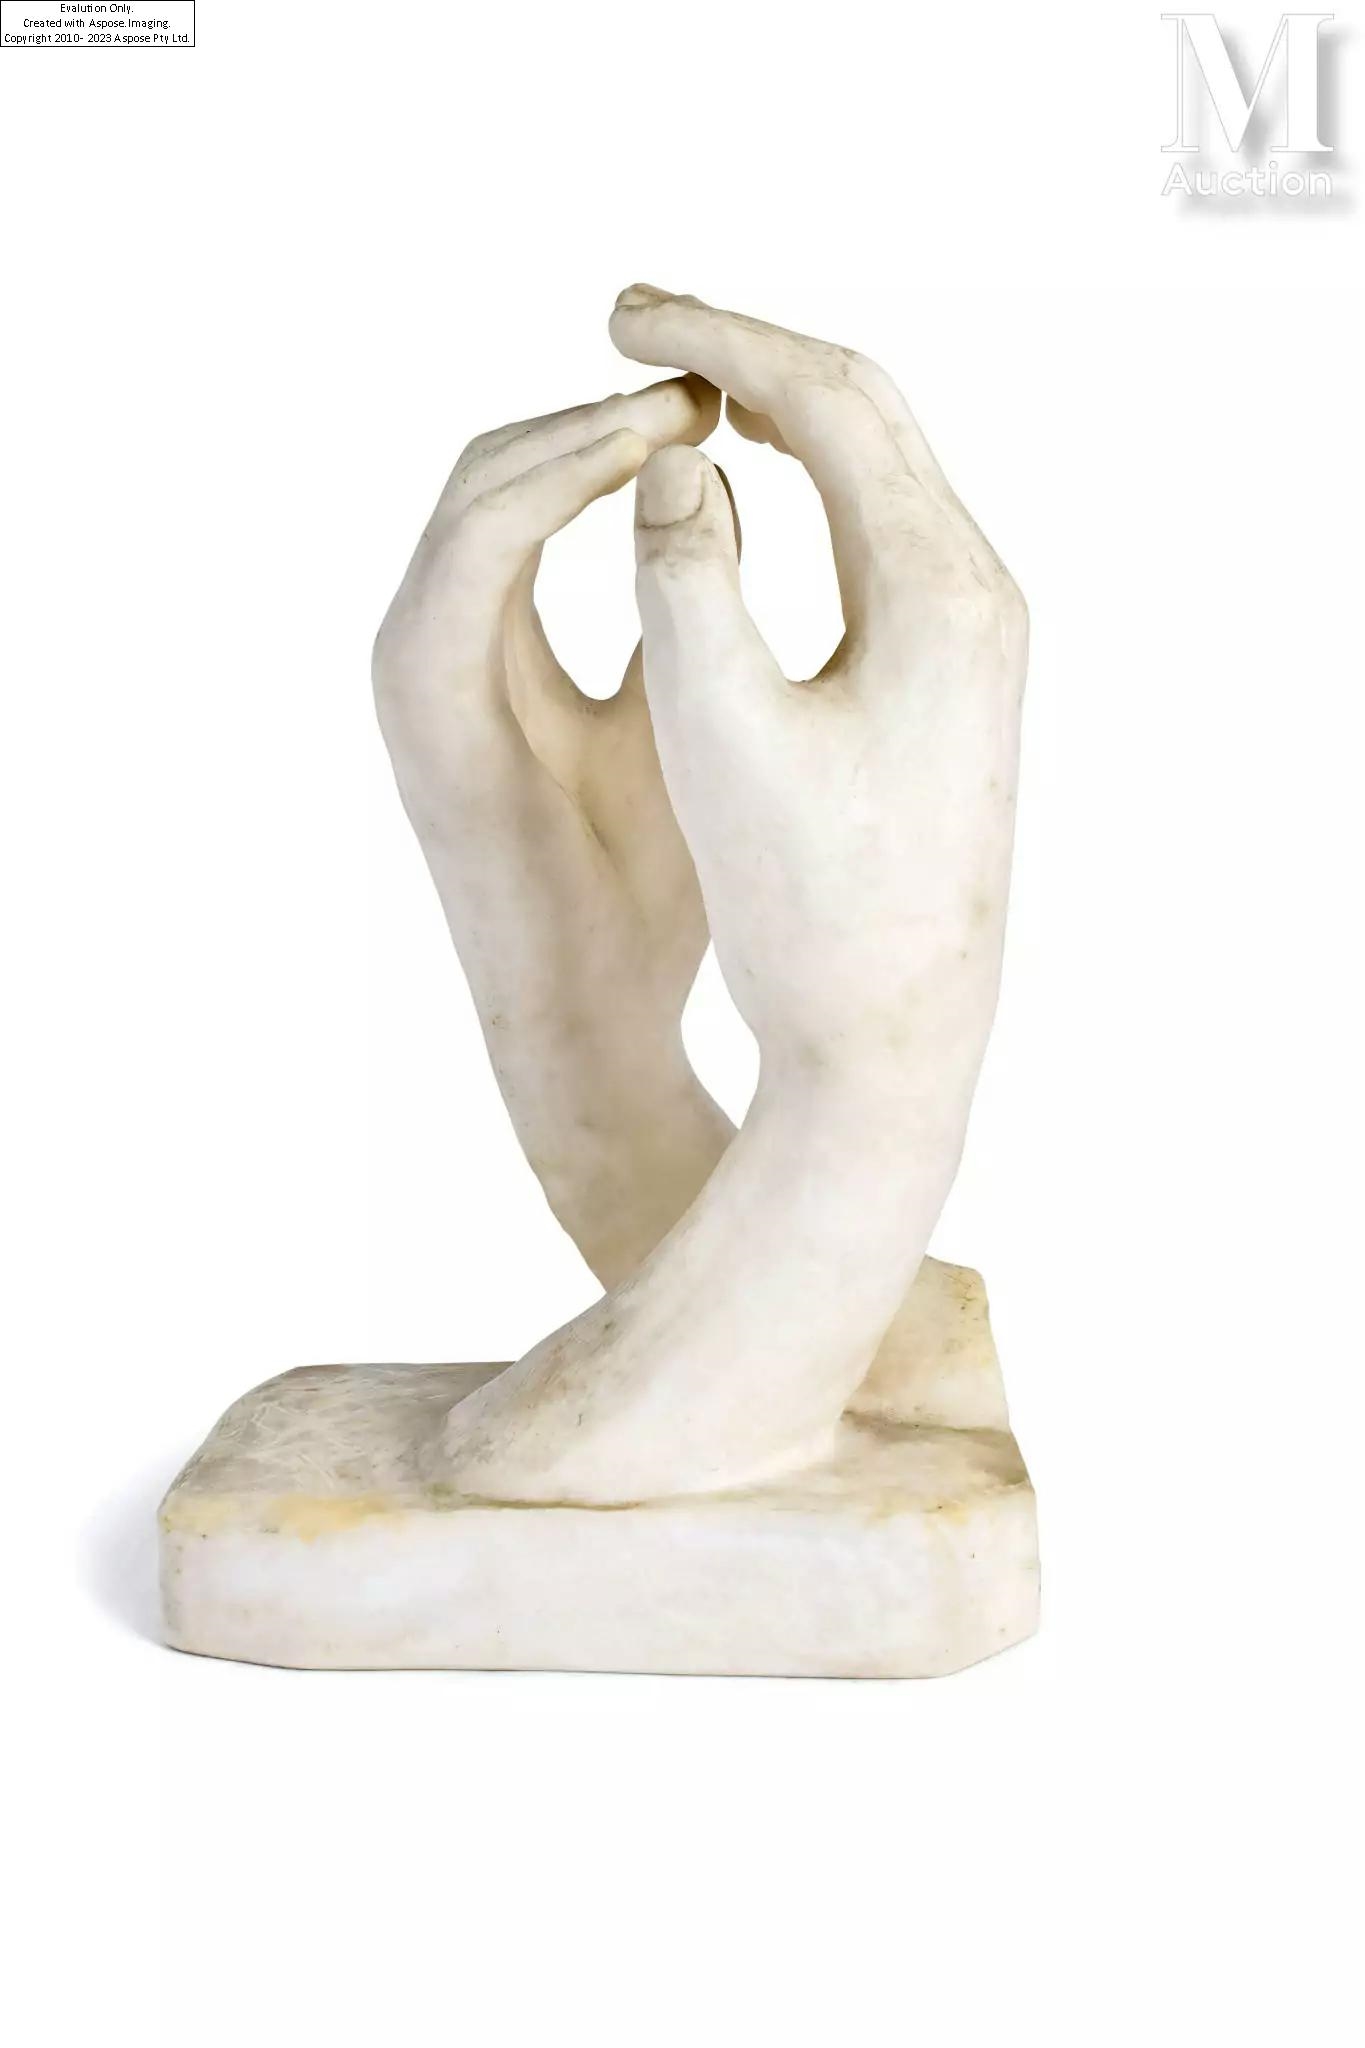 Les mains ou "La Cathédrale" - Auguste Rodin